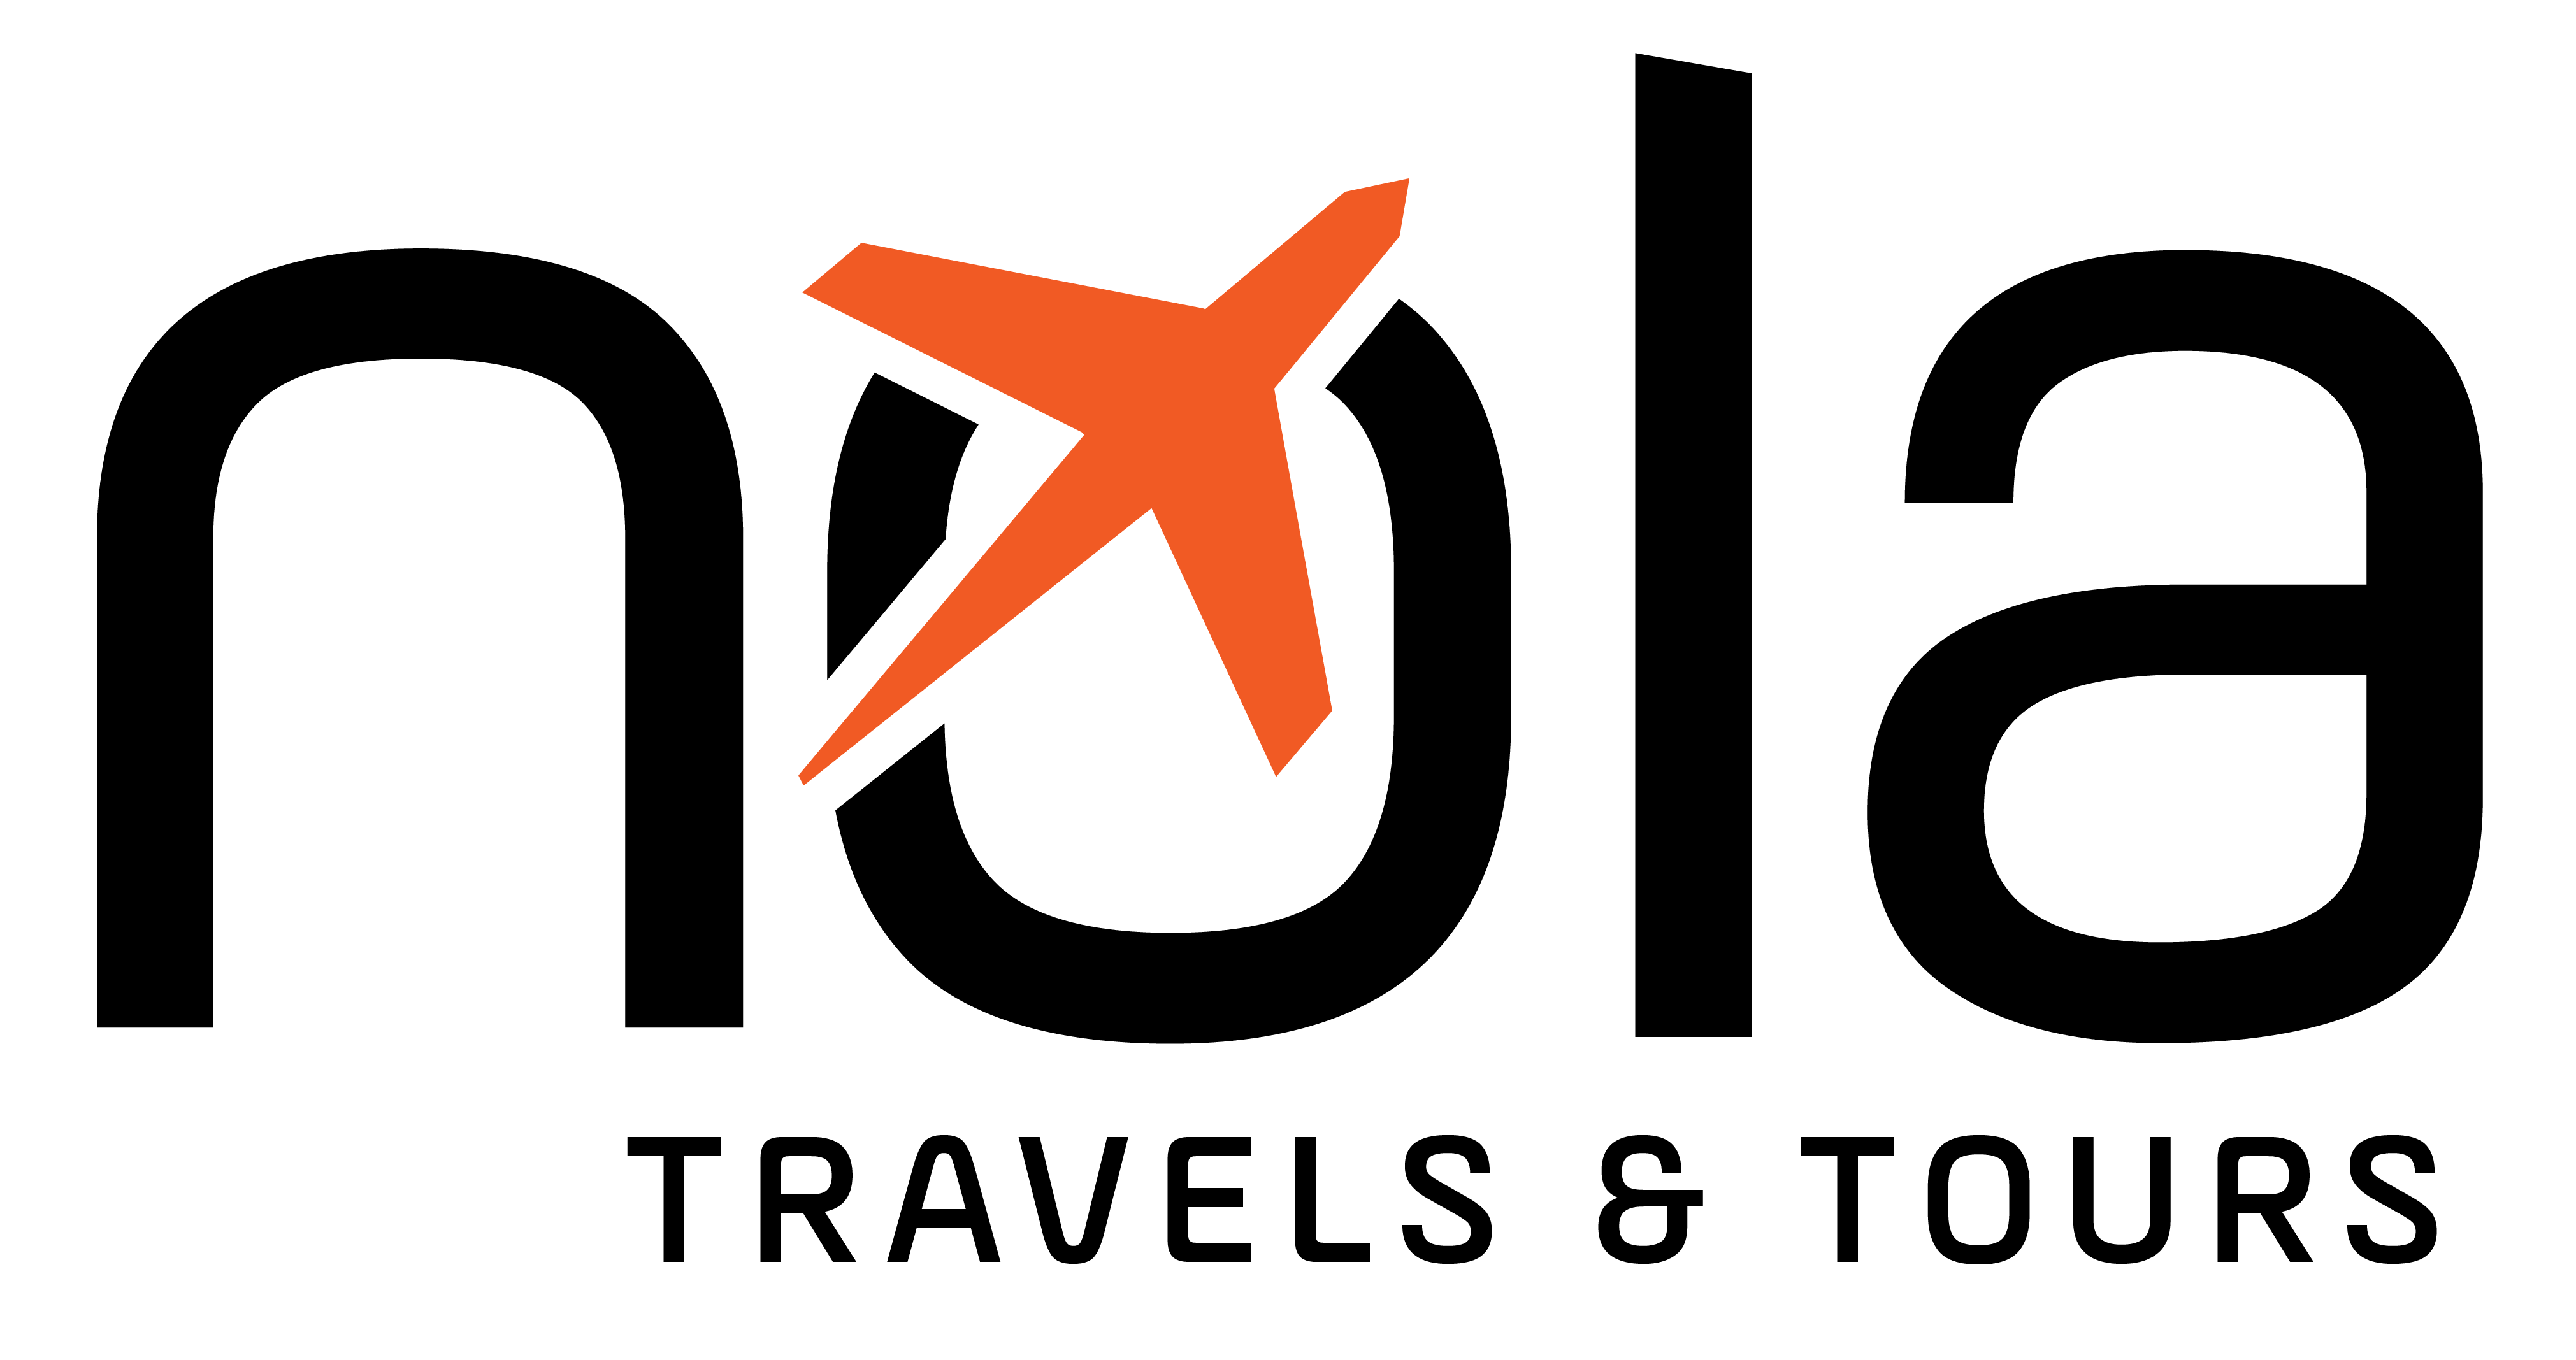 Nola travels logo